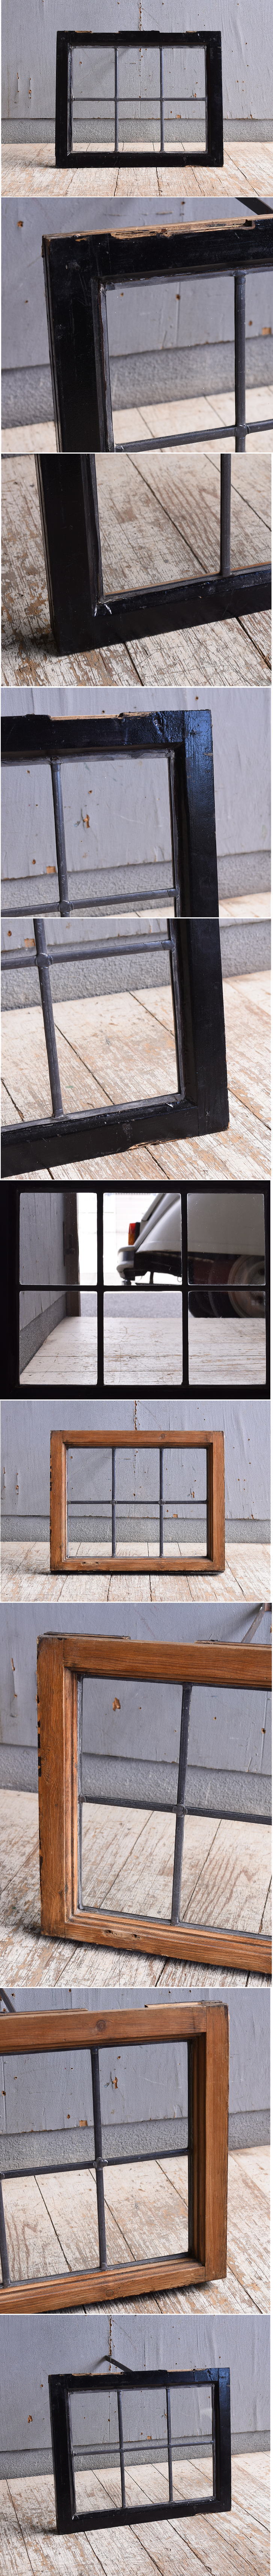 イギリス アンティーク 窓 無色透明 11031